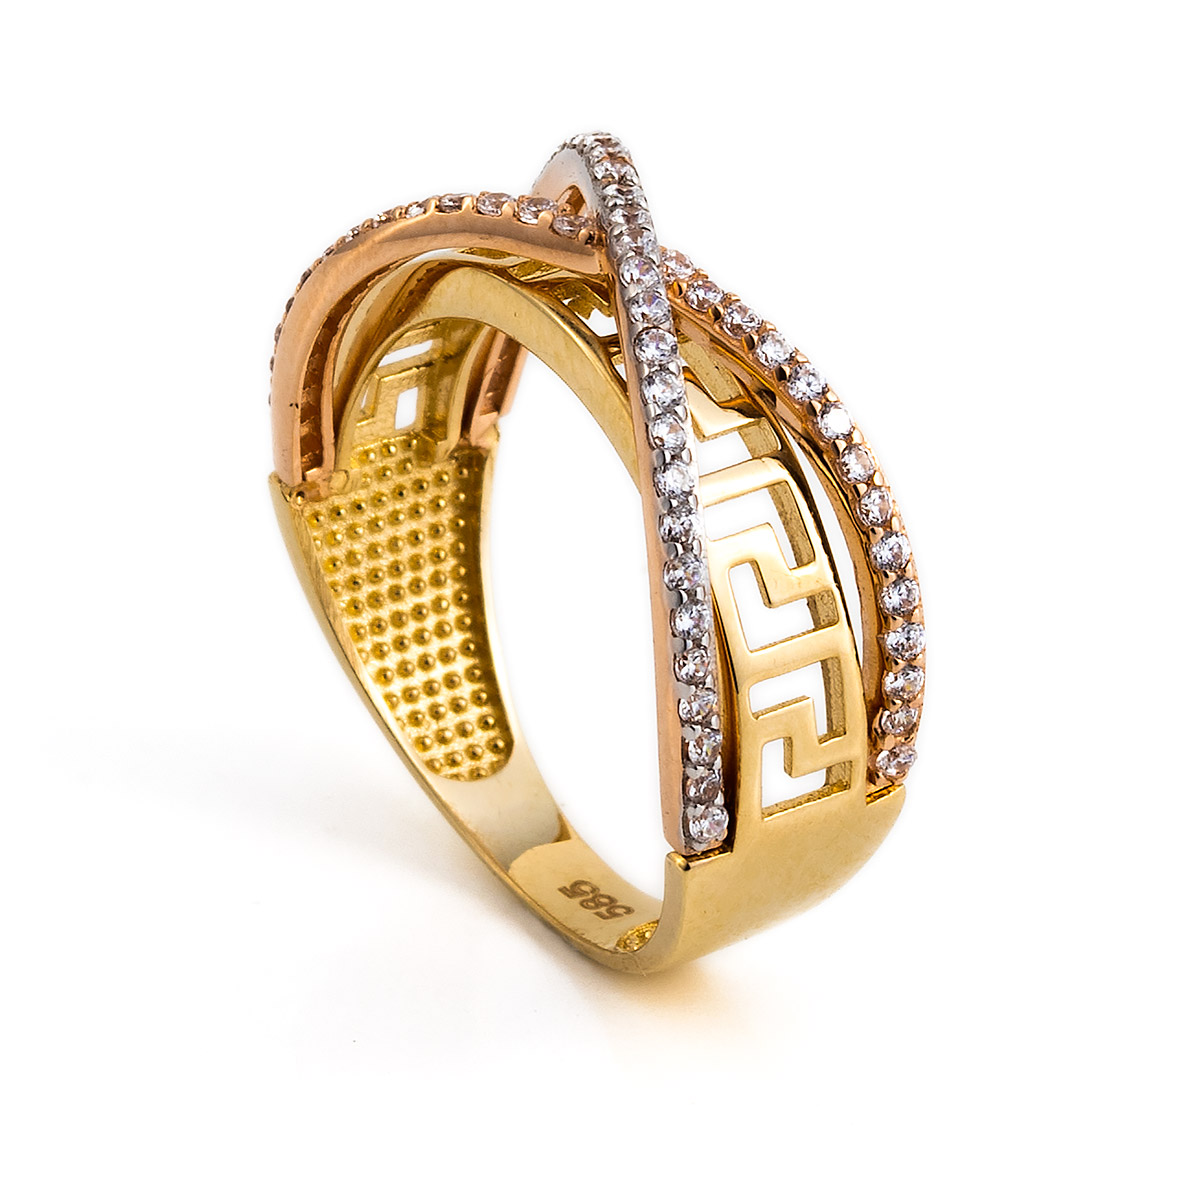 Gold Meander ring - GREEK ROOTS Greek key jewellery